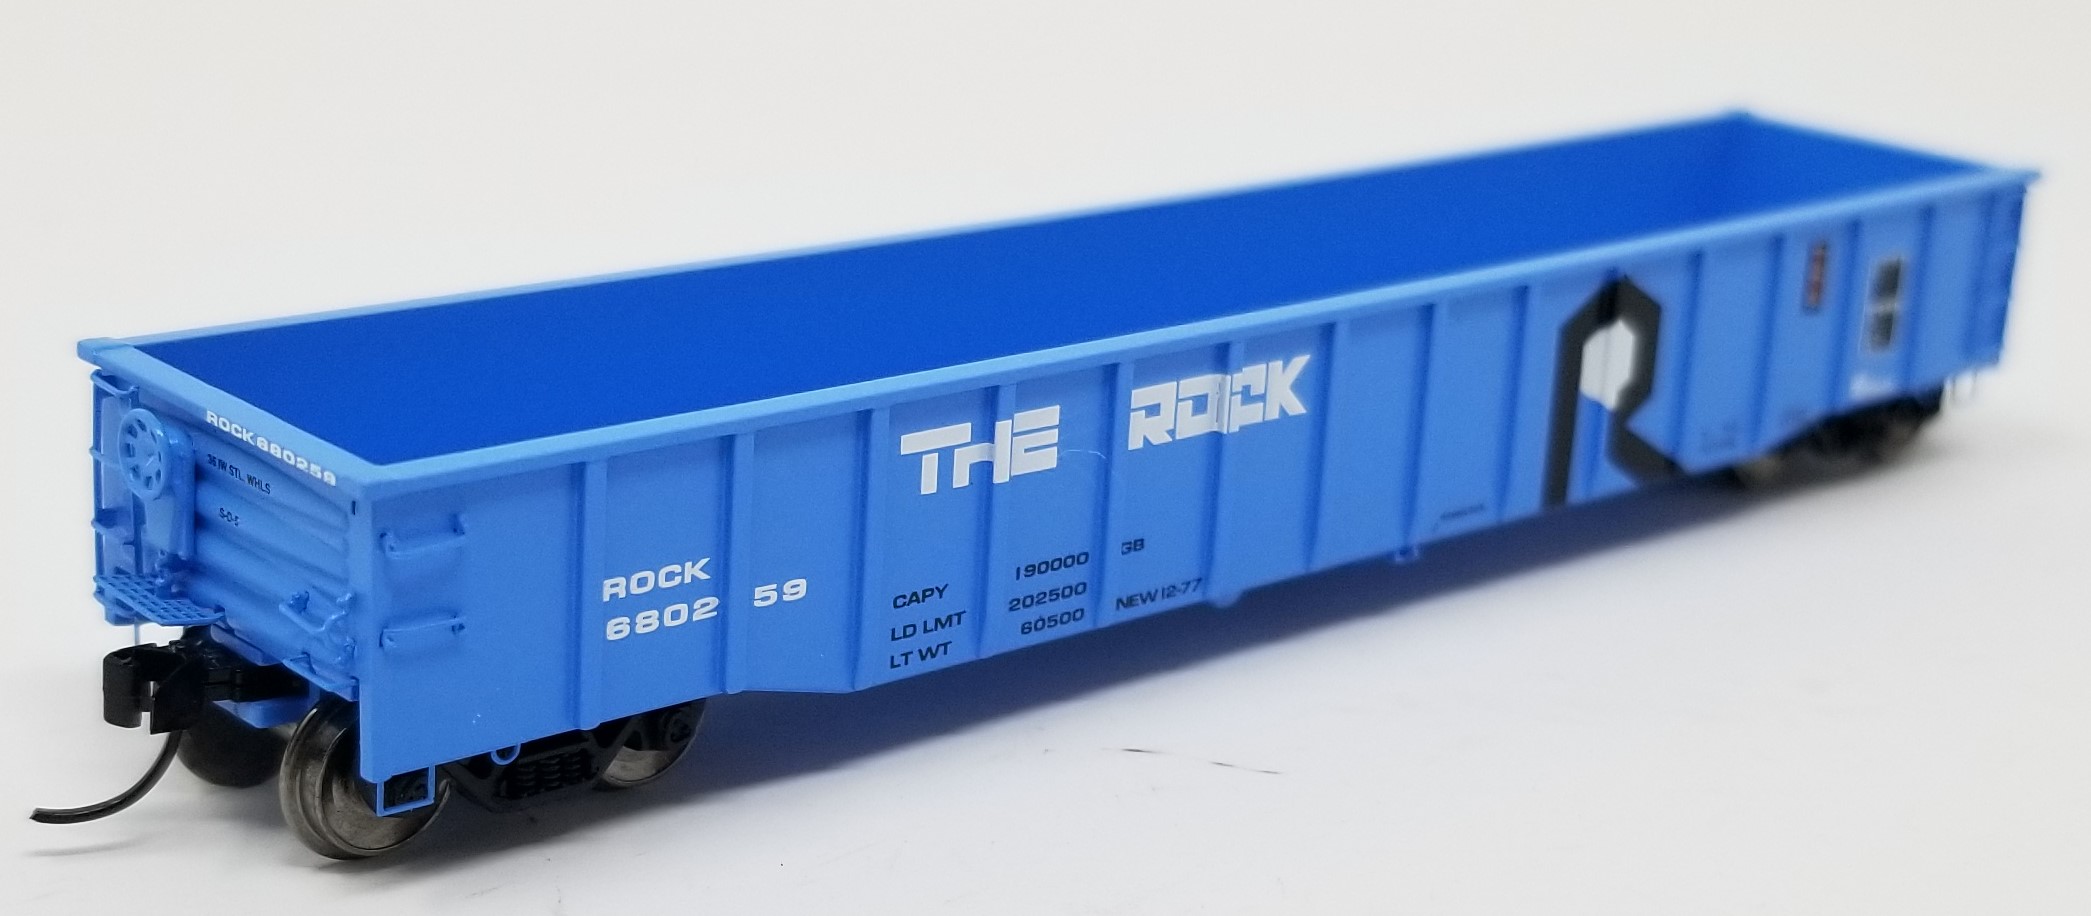 Trainworx N 25243-22 Thrall 52’6 Gondola Car 'The Rock' Rock Island ROCK #680210